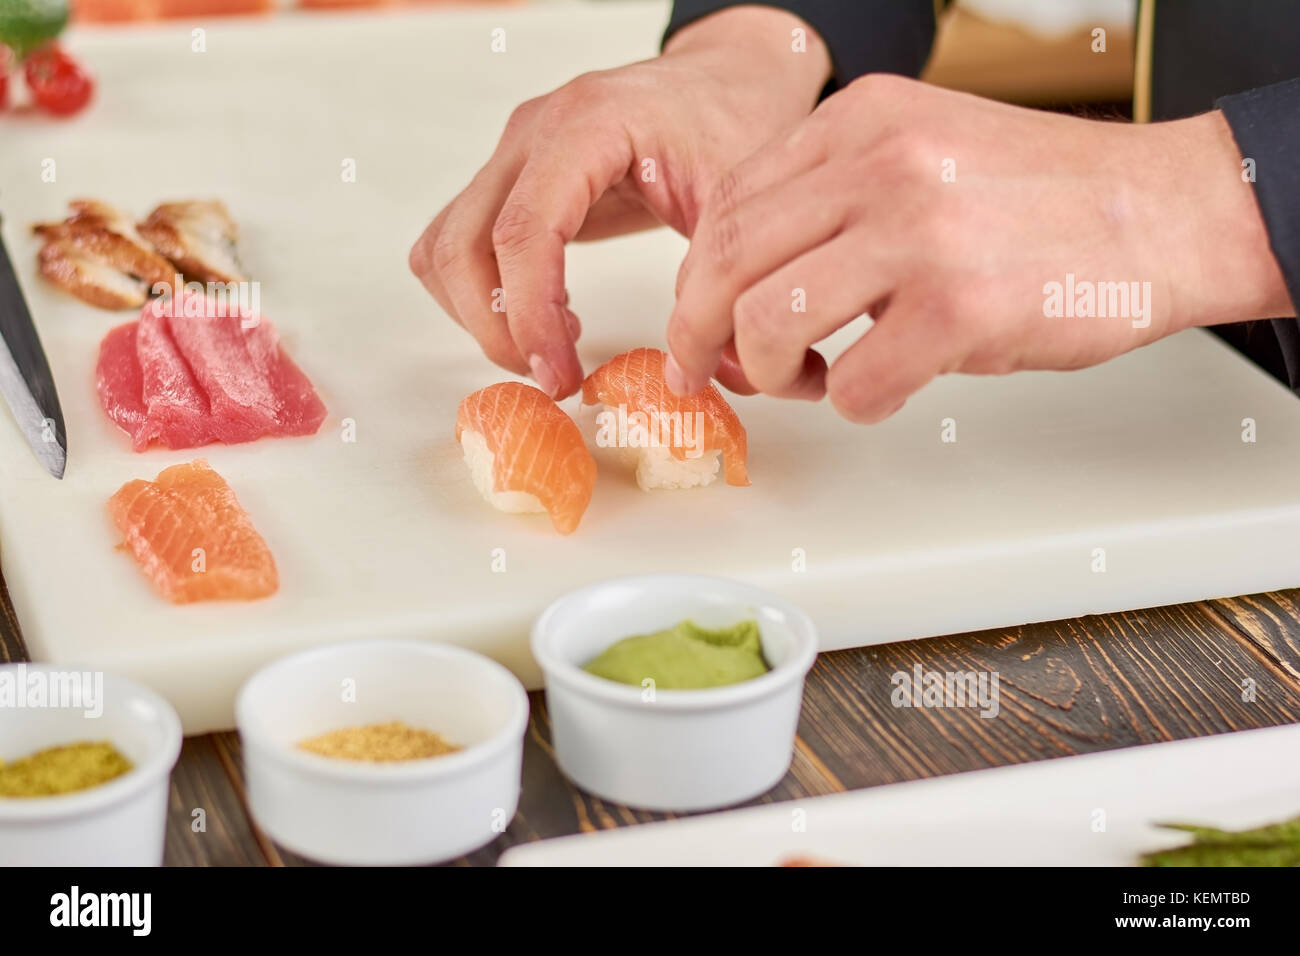 Chef mains cuisine nigiri sushi. male chef mains préparation de sushi nigiri au saumon sur tableau blanc. le processus de fabrication de sushis. Banque D'Images